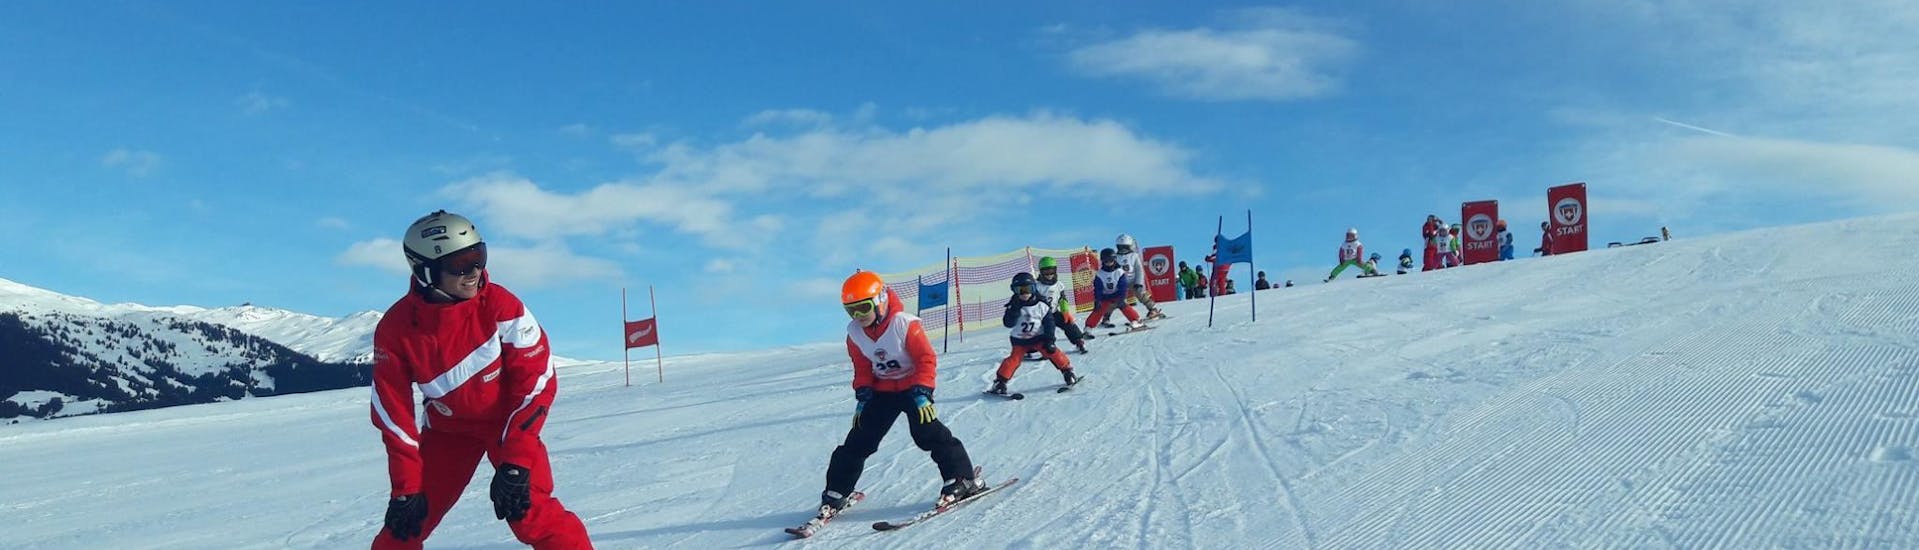 Clases de esquí para niños con experiencia.